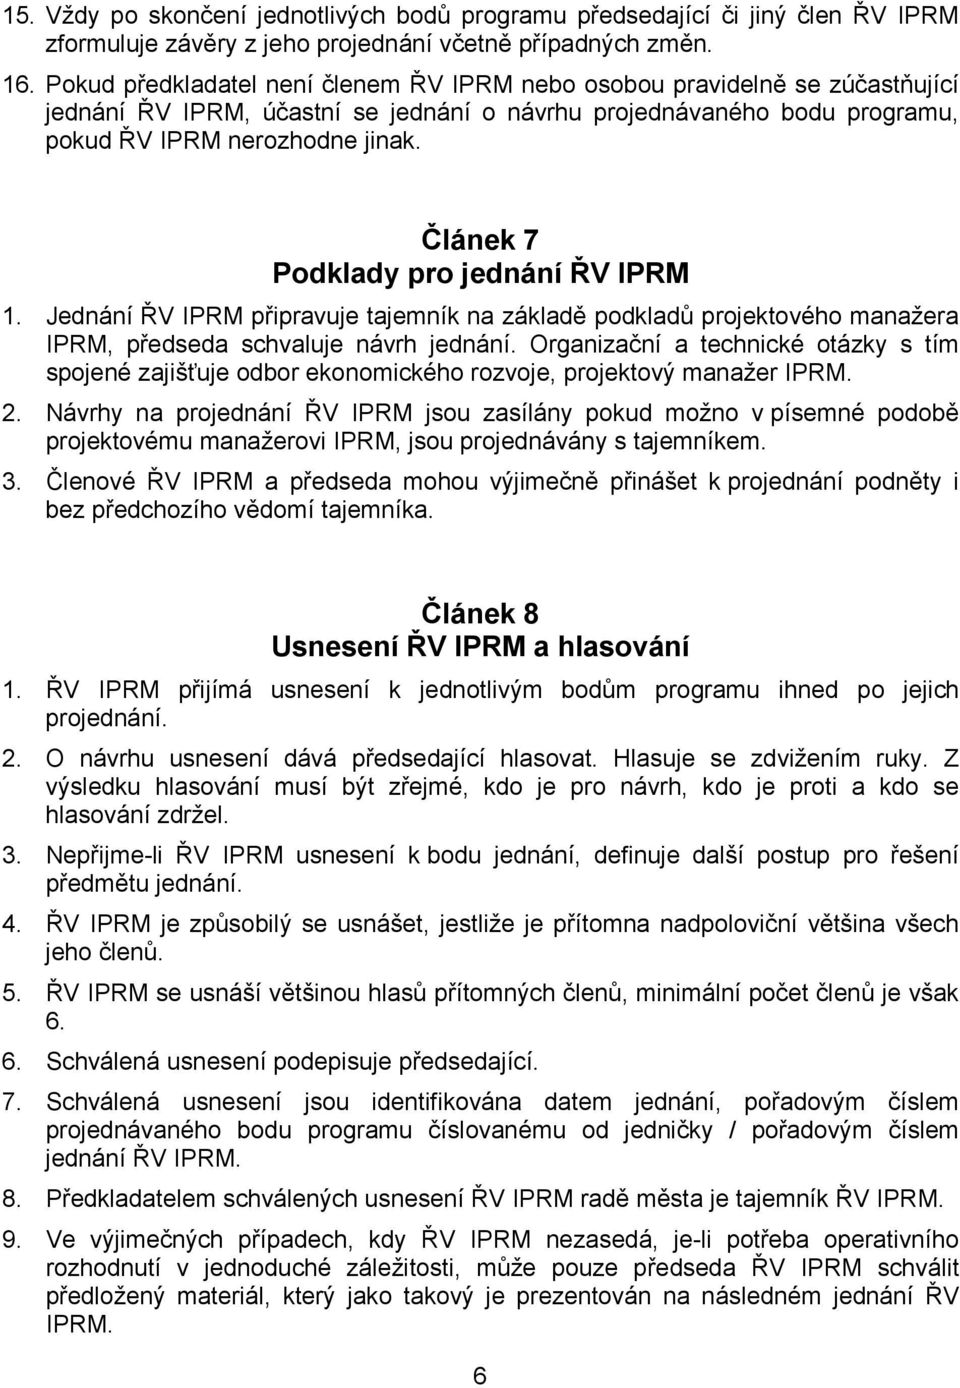 Článek 7 Podklady pro jednání ŘV IPRM 1. Jednání ŘV IPRM připravuje tajemník na základě podkladů projektového manažera IPRM, předseda schvaluje návrh jednání.